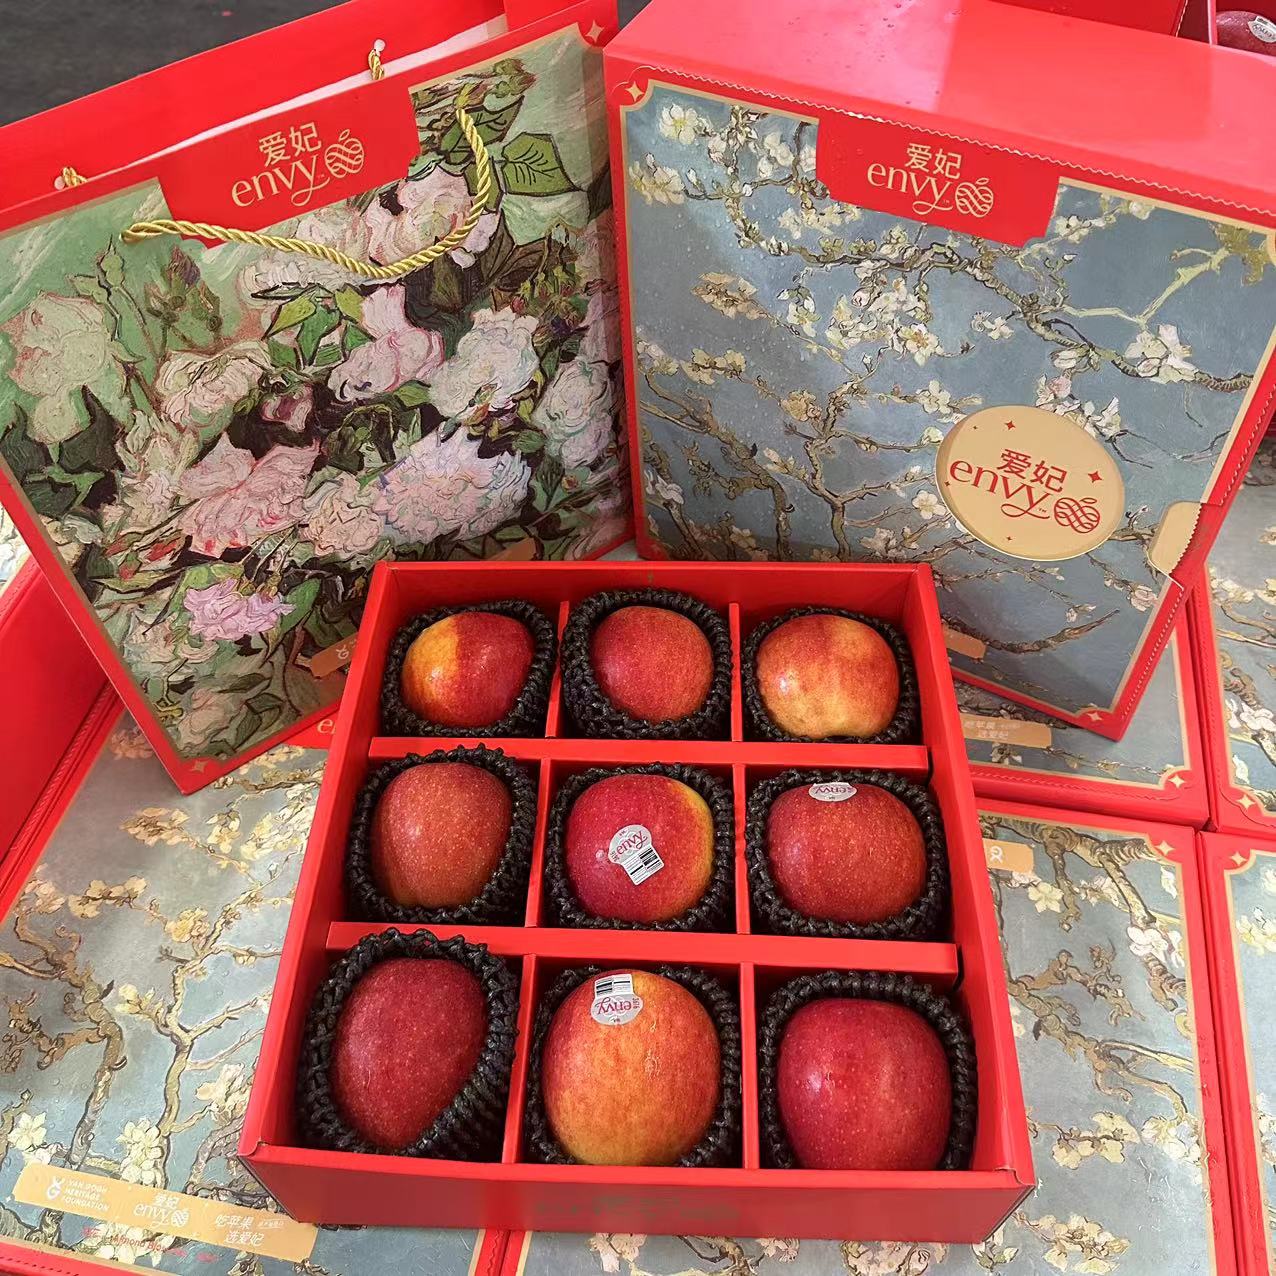 美国爱妃苹果5斤礼盒装9个新鲜进口envy3616不氧化甜脆红苹果水果